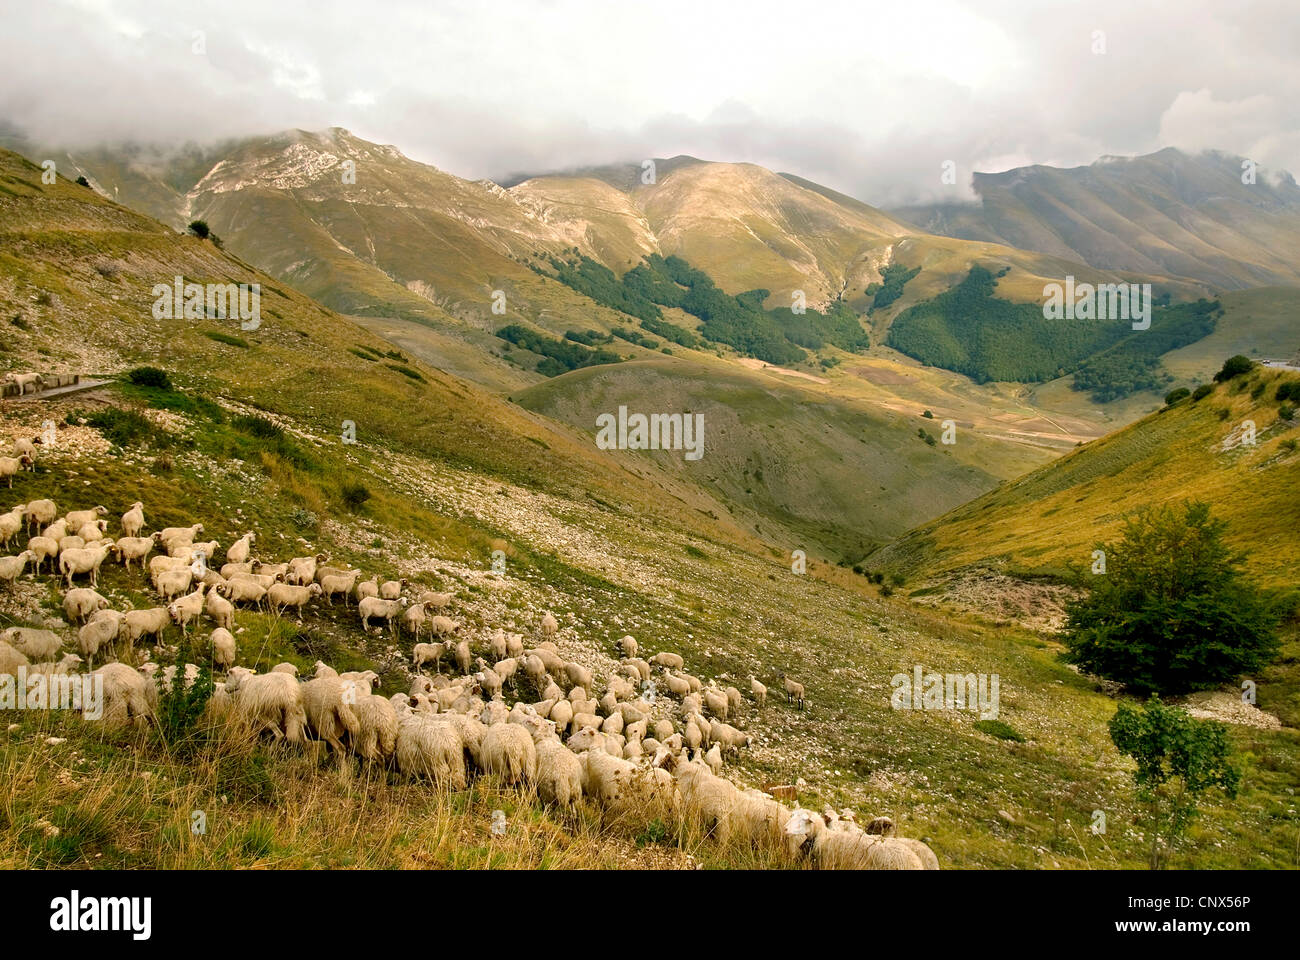 Landscape Image at the Parco Nazionale dei Monti Sibillini, Italy, Marche, Monti Sibillini National Park Stock Photo